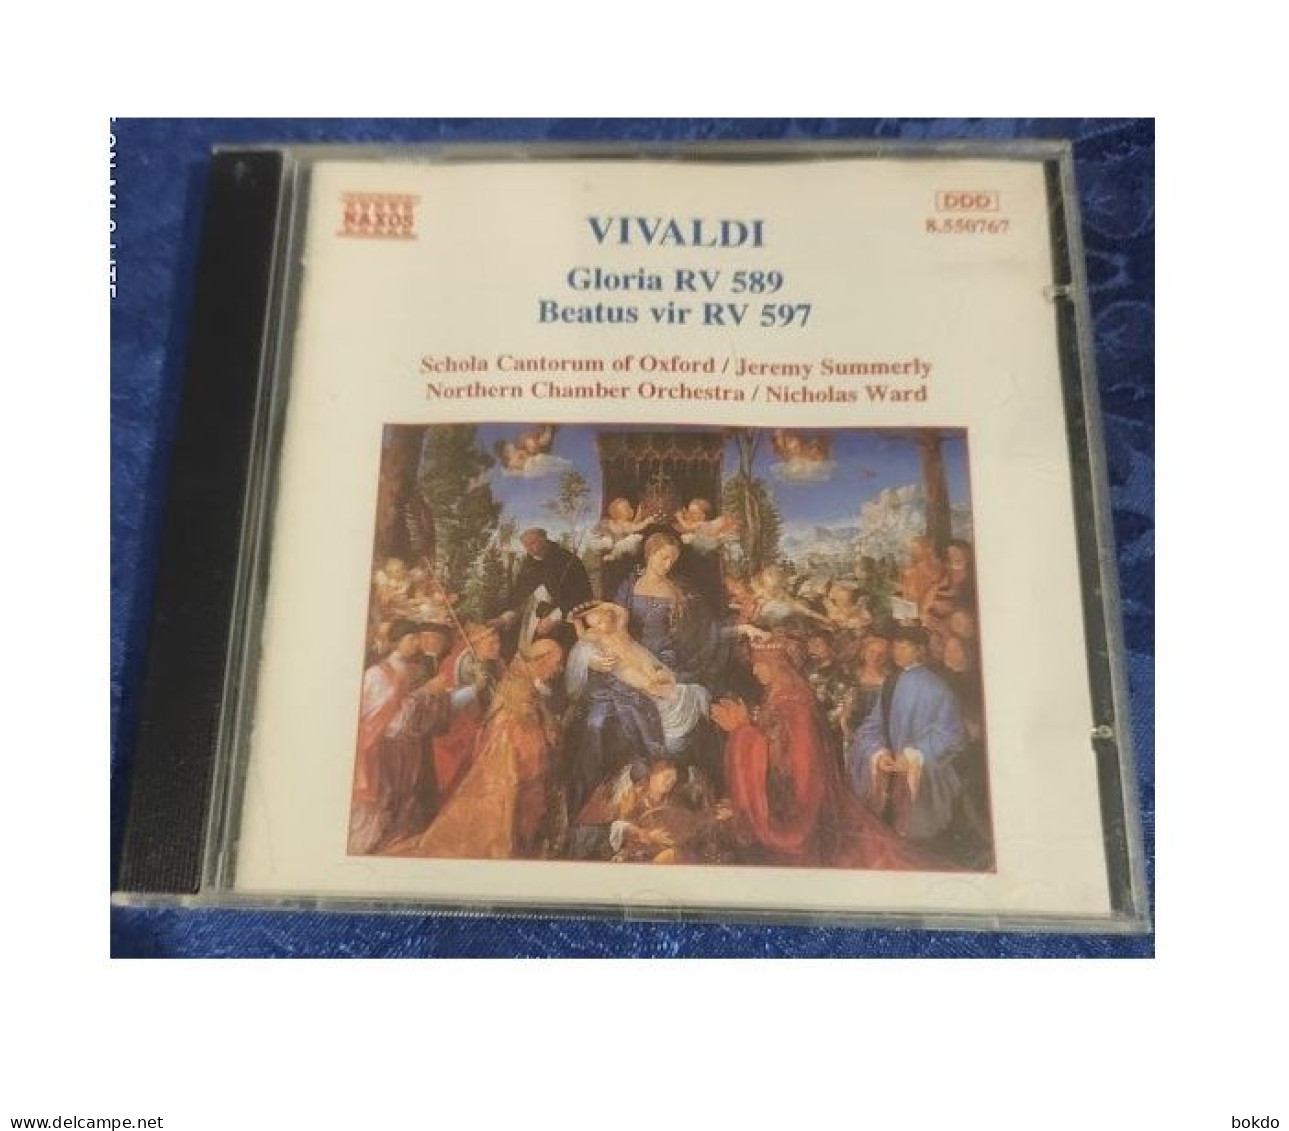 VIVALDI - Gloria RV 589 - Beatus RV 597 - Classica